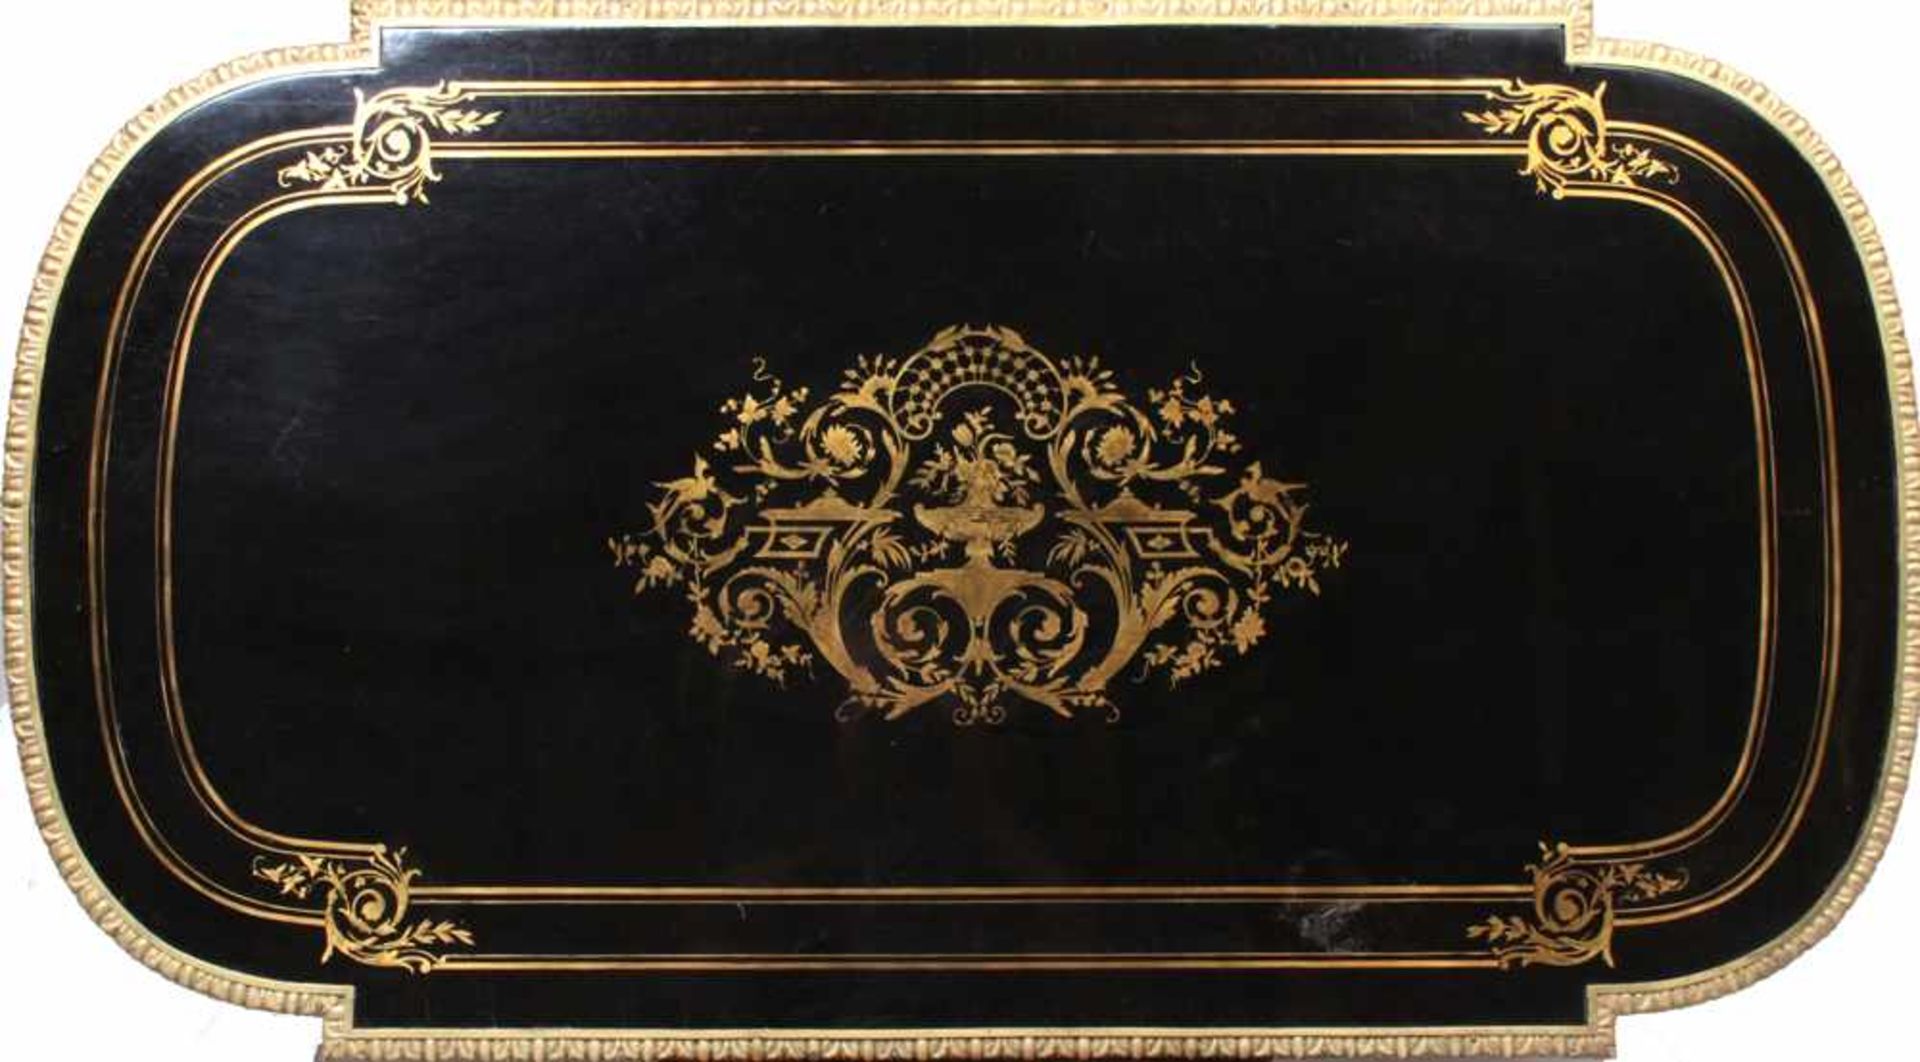 Salontisch.Napoleon III. Eiche massiv, schwarz lackiert, Messingbänder, florale und gravierte - Bild 2 aus 2